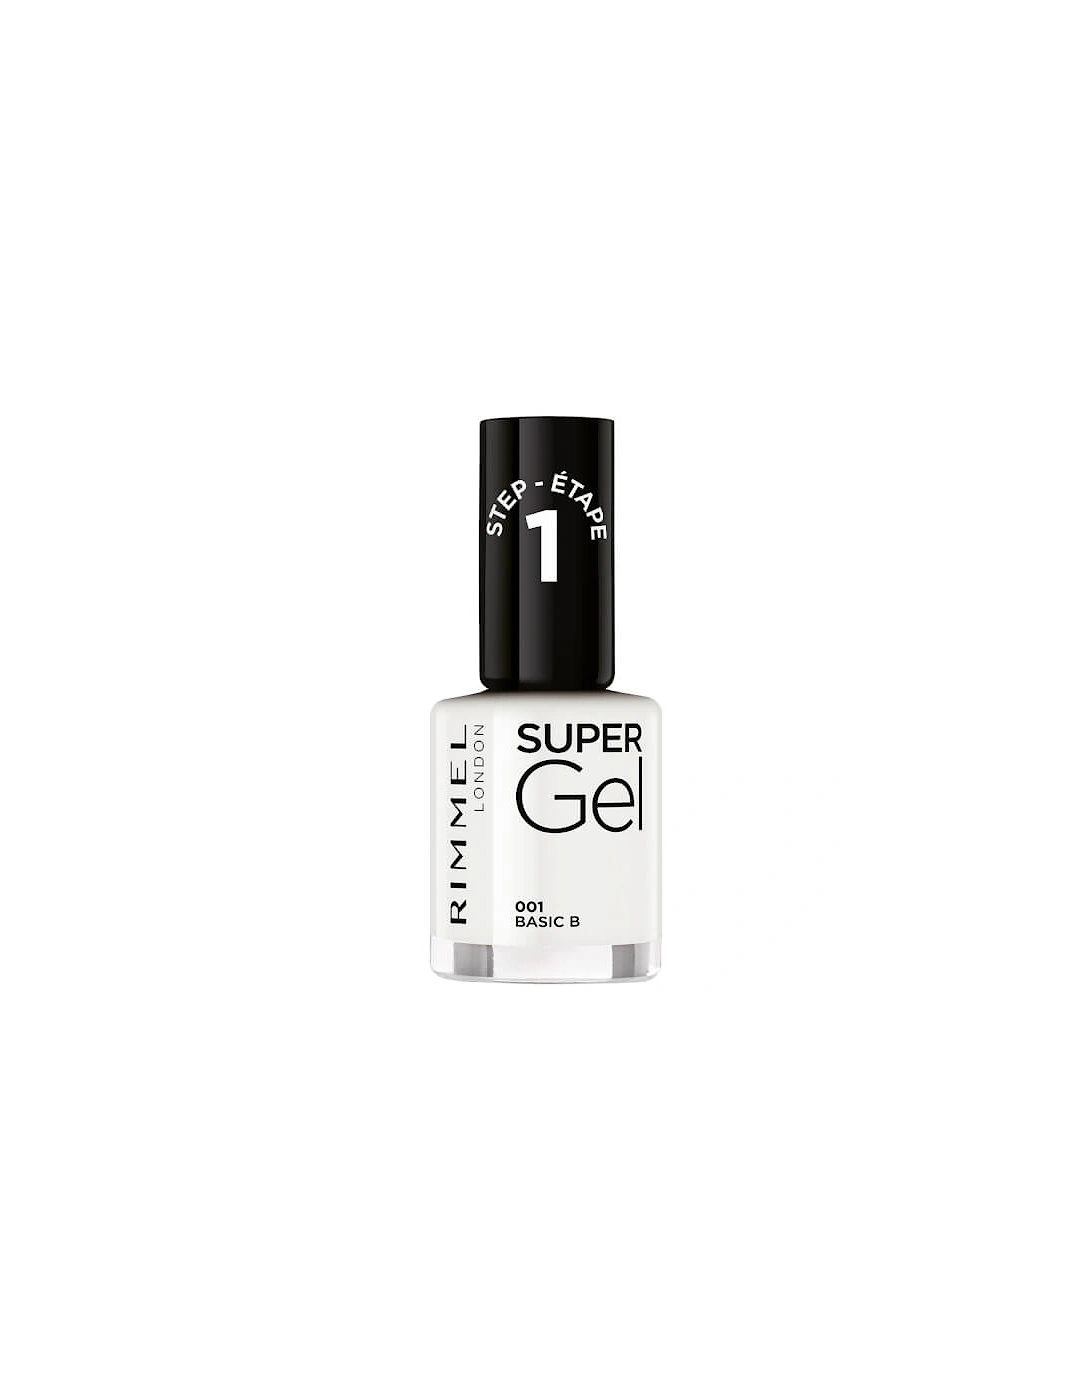 Super Gel Nail Polish - Basic B, 2 of 1